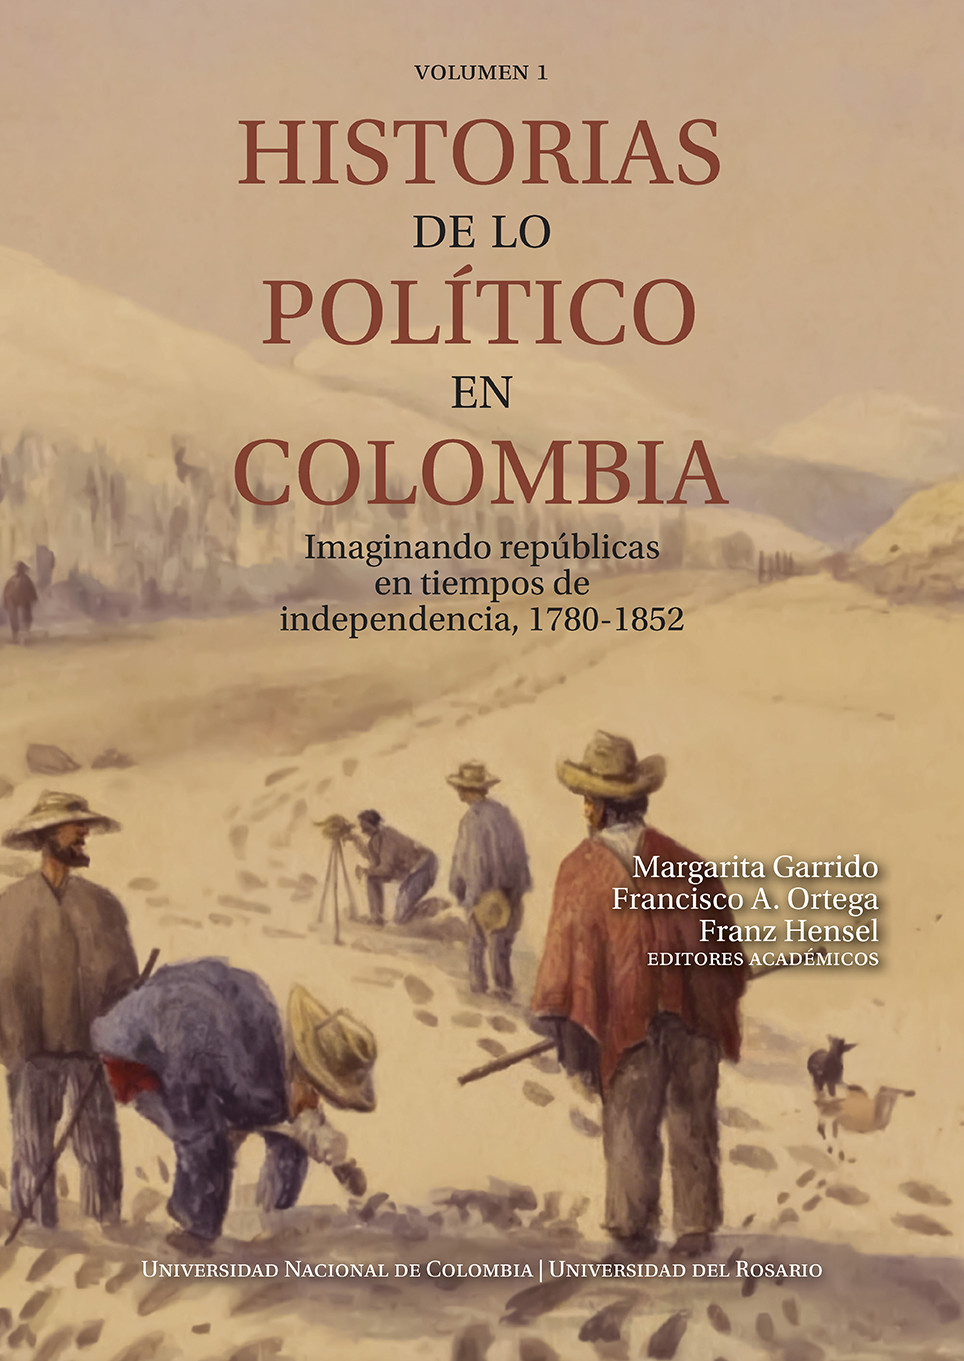 Imagen de portada del libro Historias de lo político en Colombia